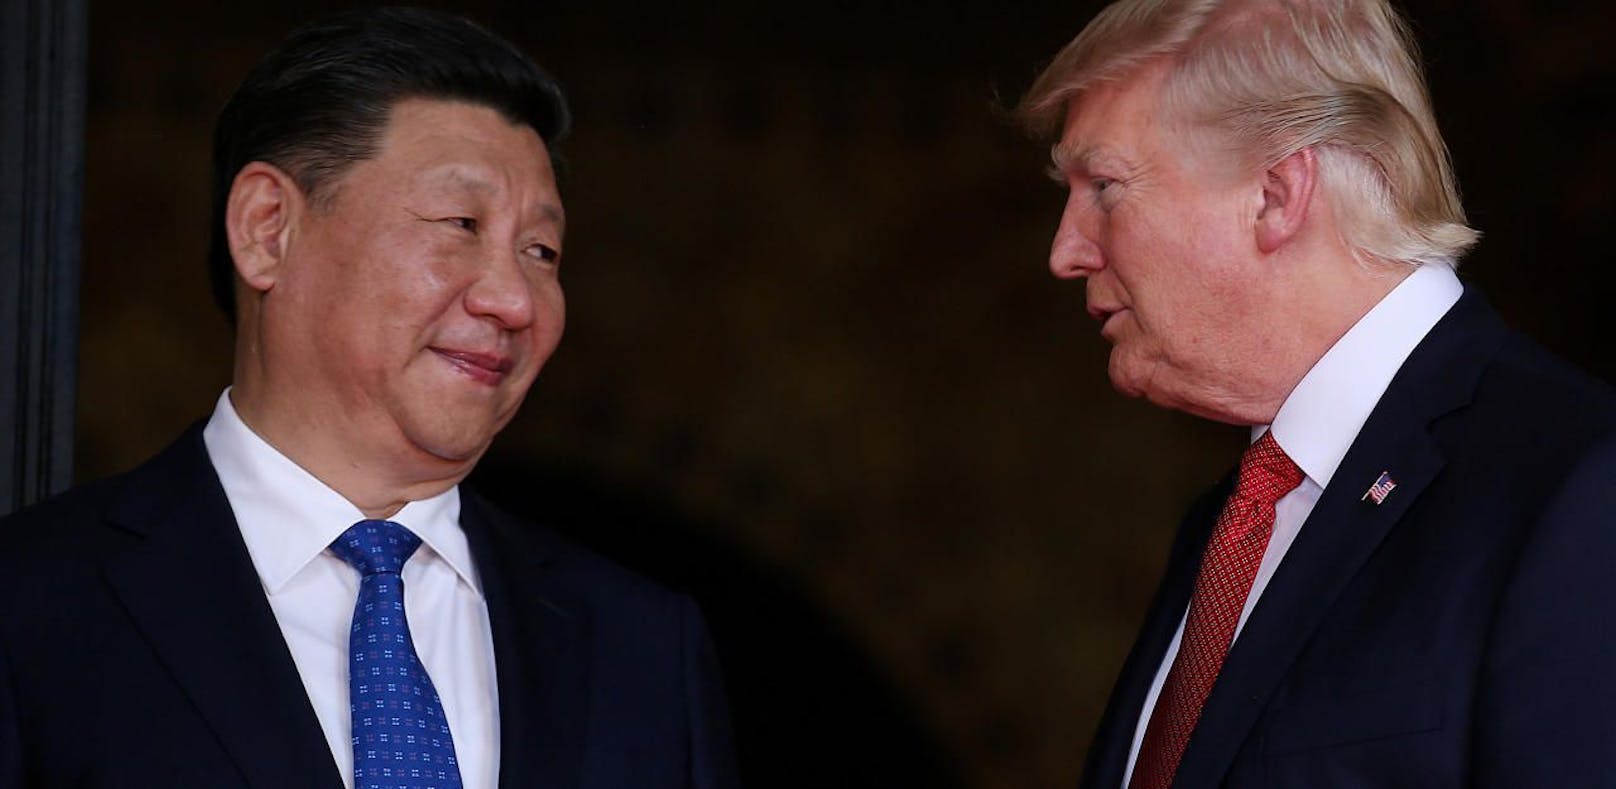 Liefern sich einen erbitterten Handelskrieg: Chinas Staatschef Xi Jinping und Donald Trump